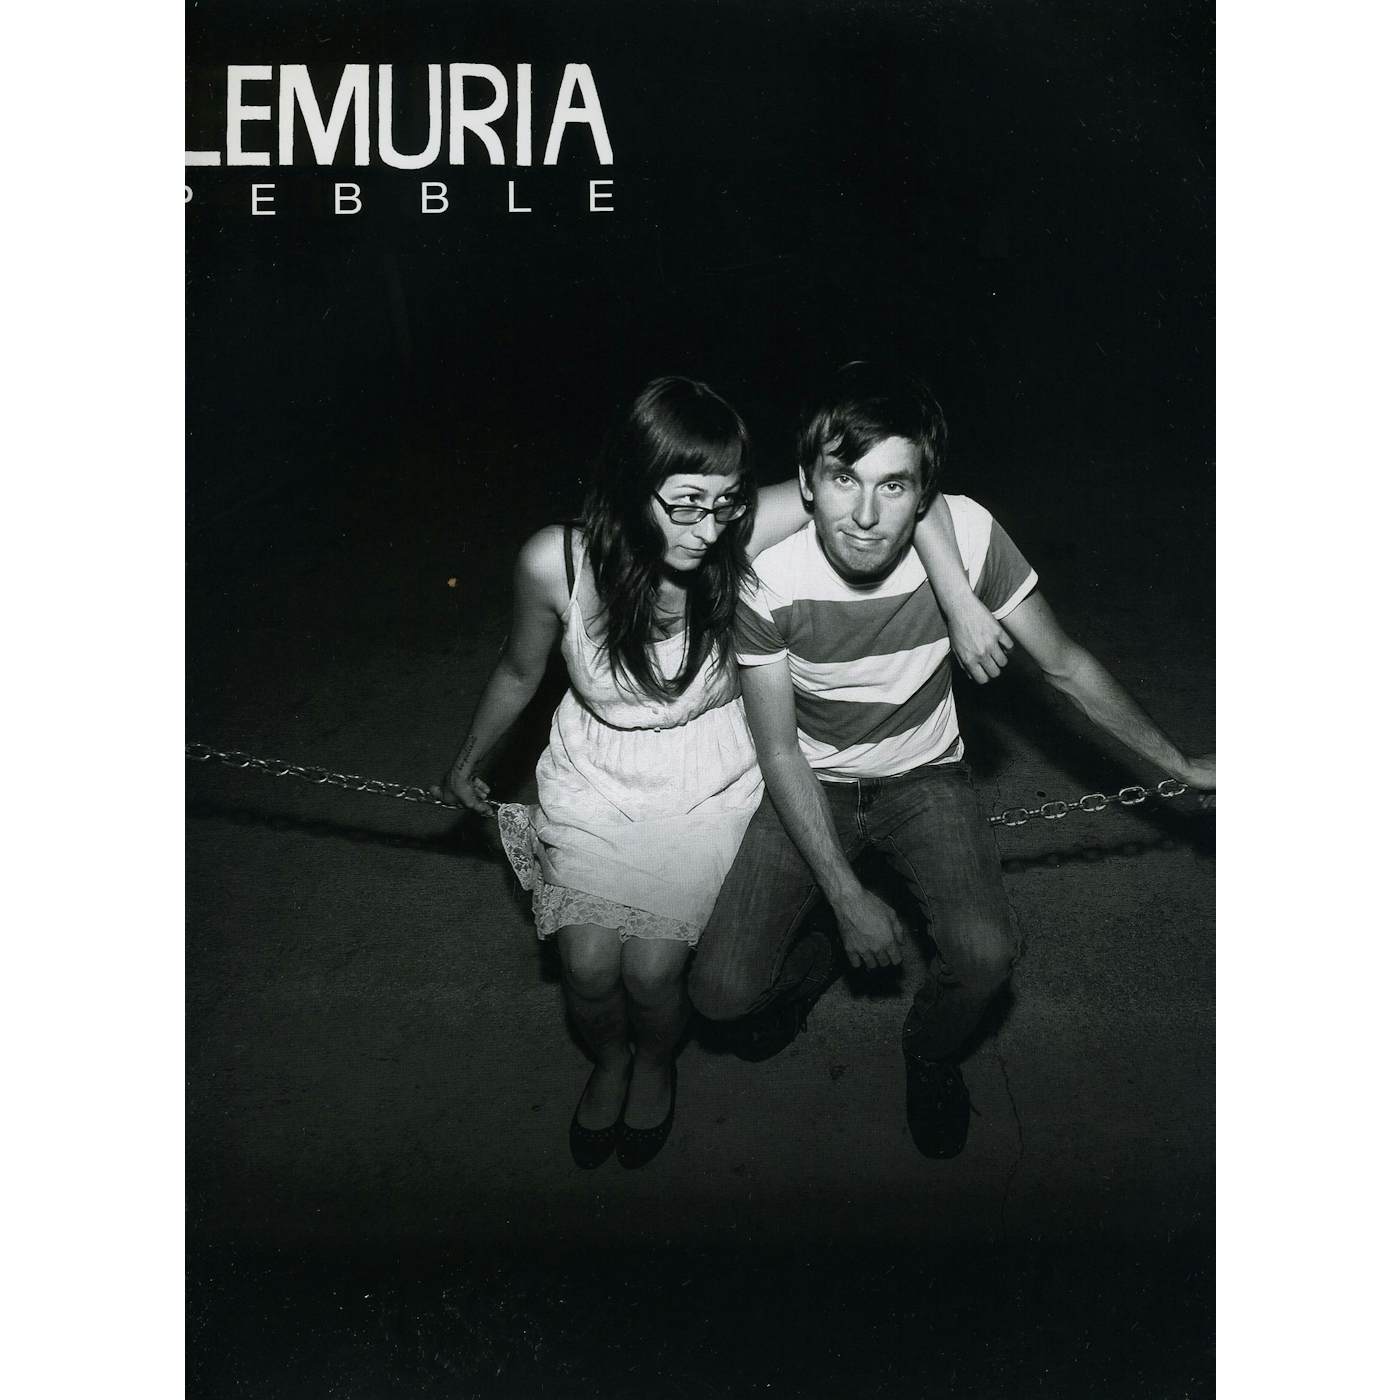 Lemuria Pebble Vinyl Record